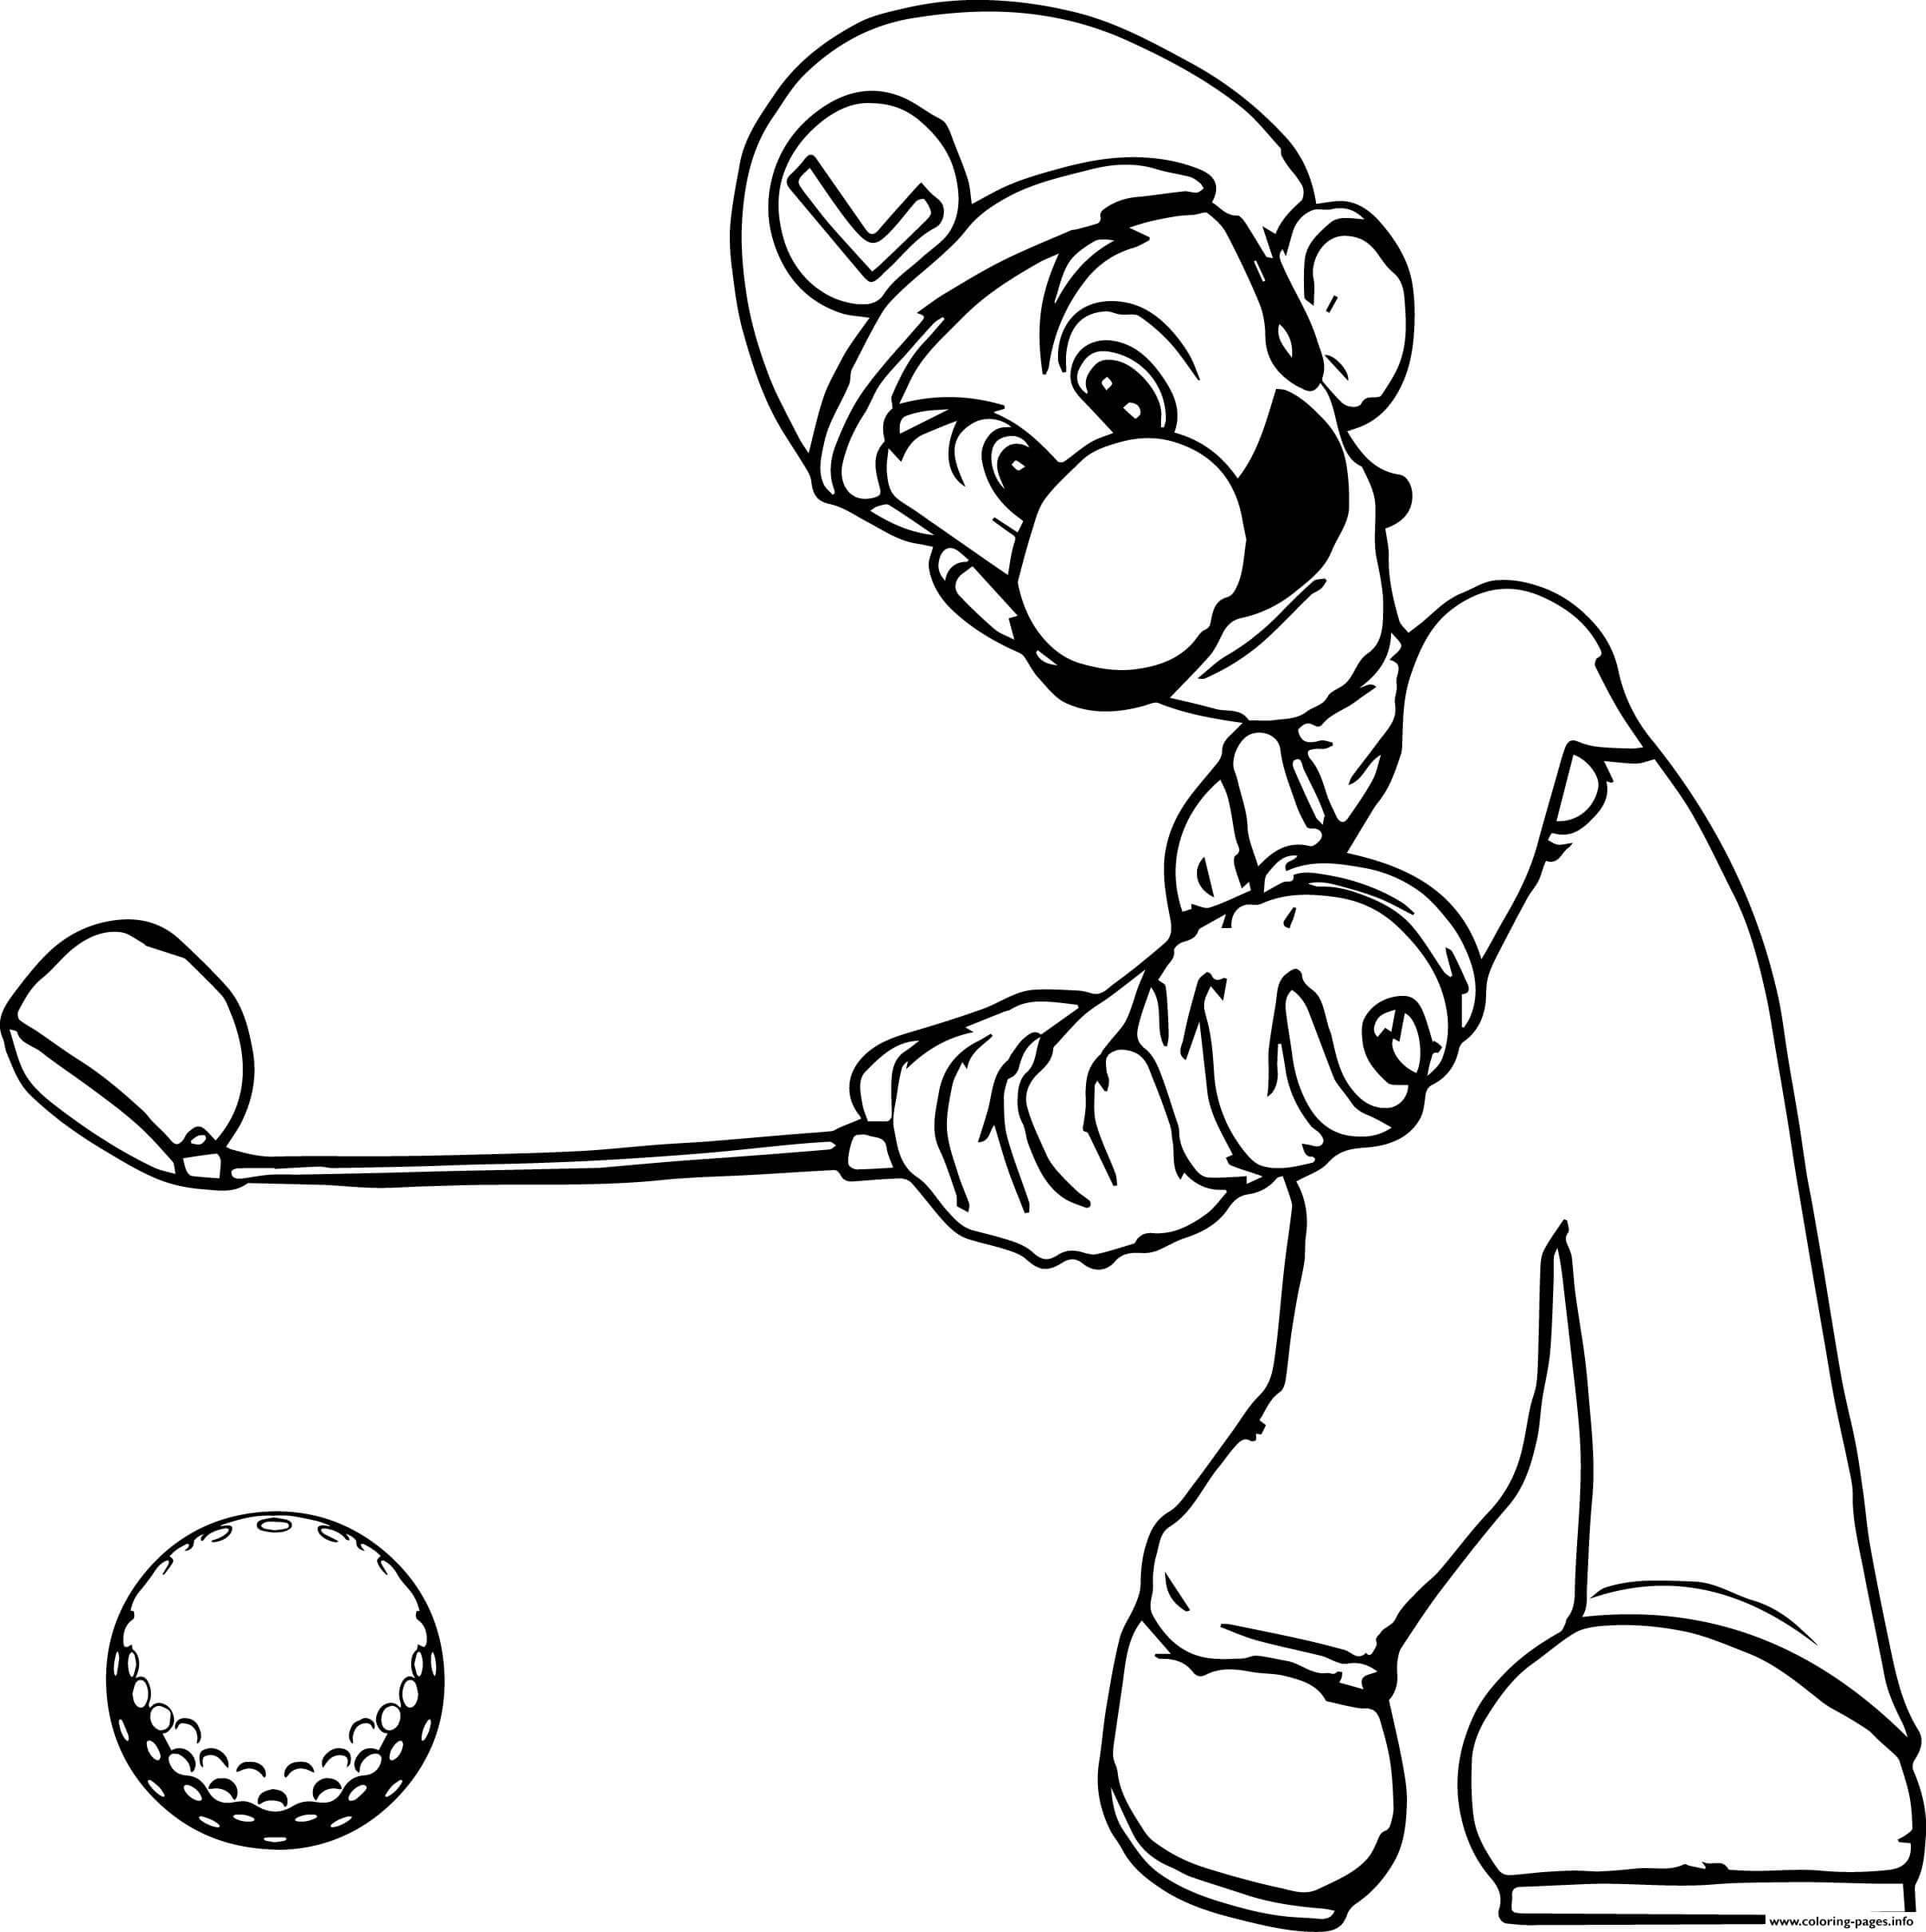 Dibujos de Luigi jugando al Golf para colorear